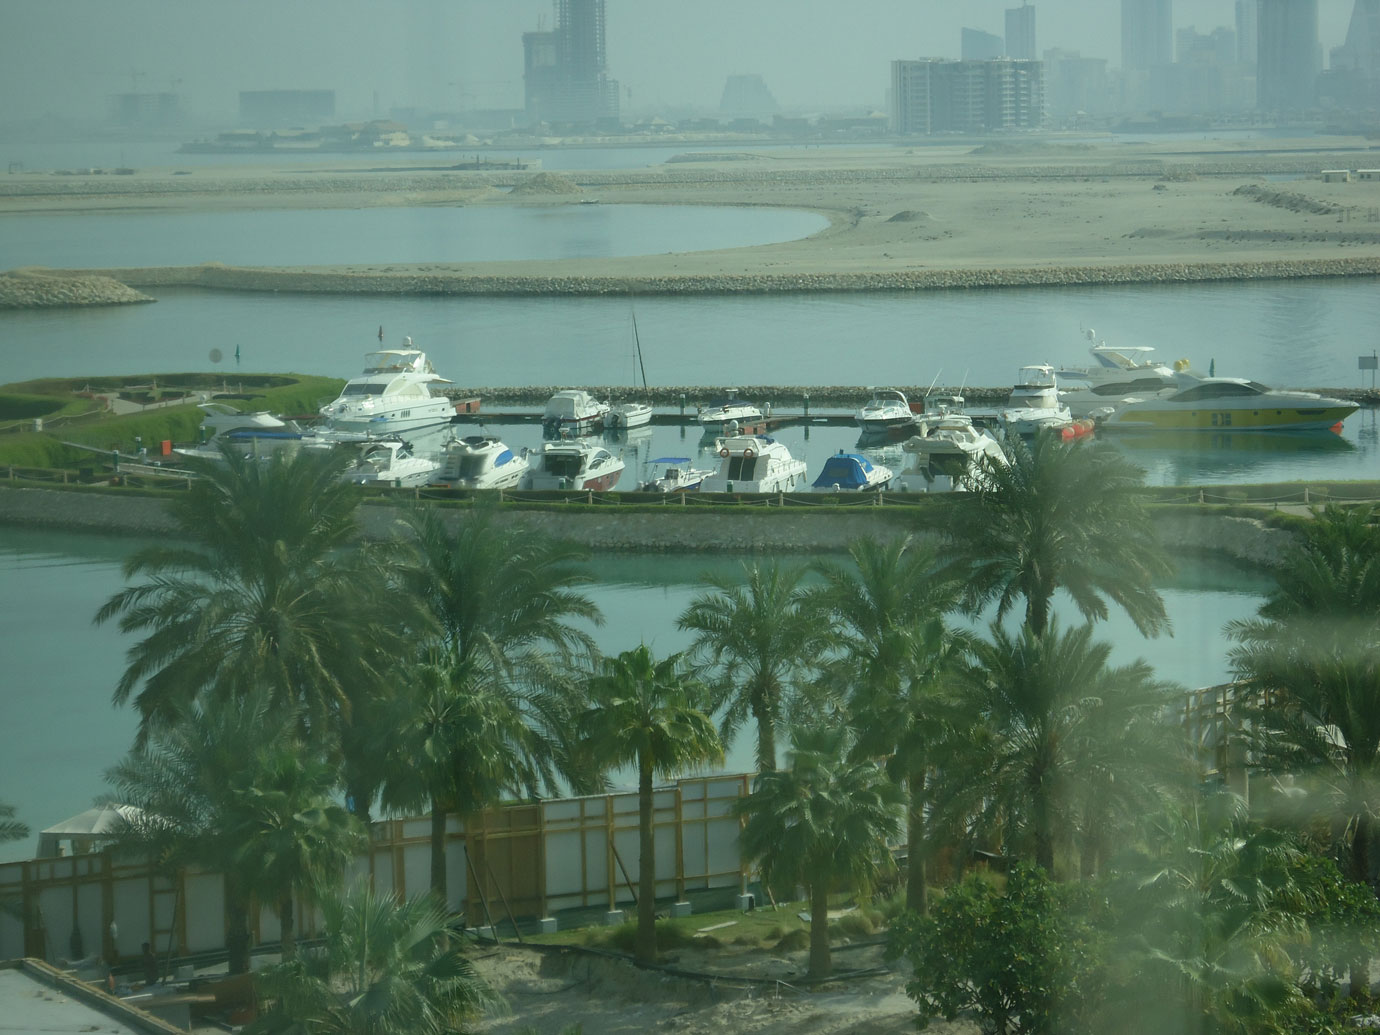 Manama'da deniz doldurularak elde edilen kıyı yapıları